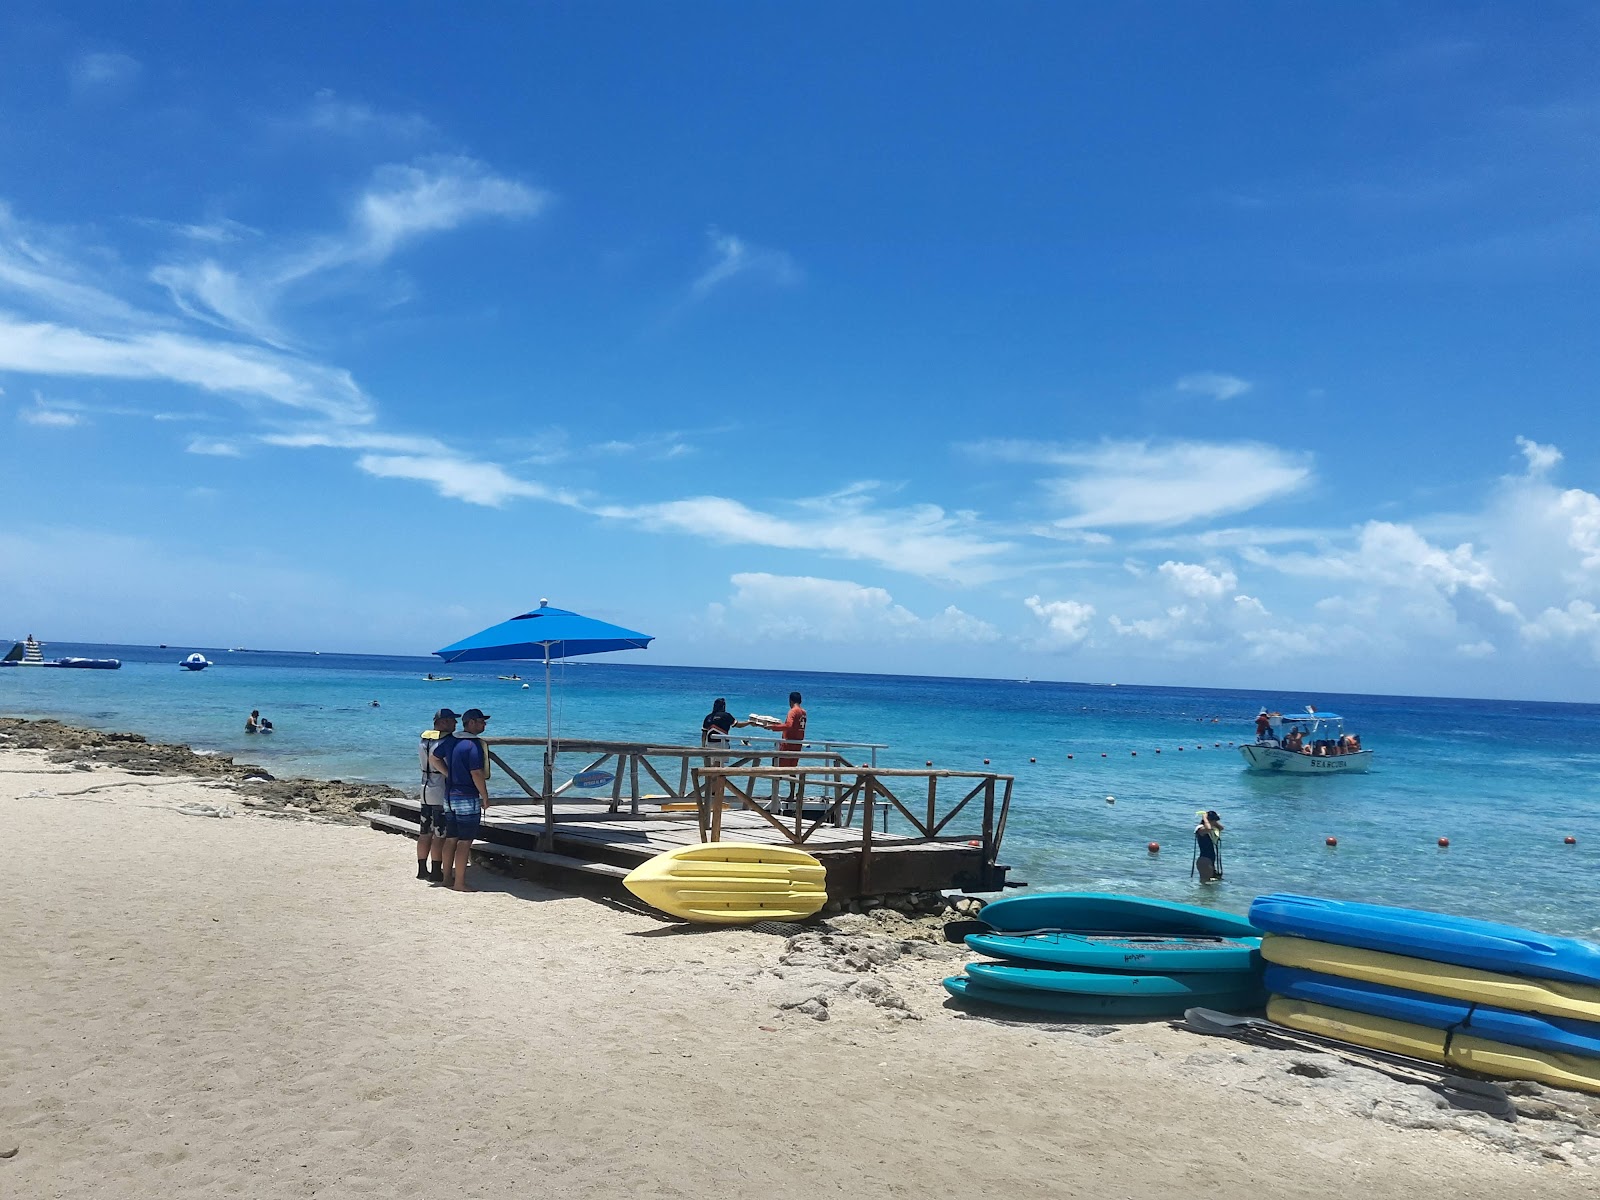 Playa Uvas'in fotoğrafı geniş plaj ile birlikte